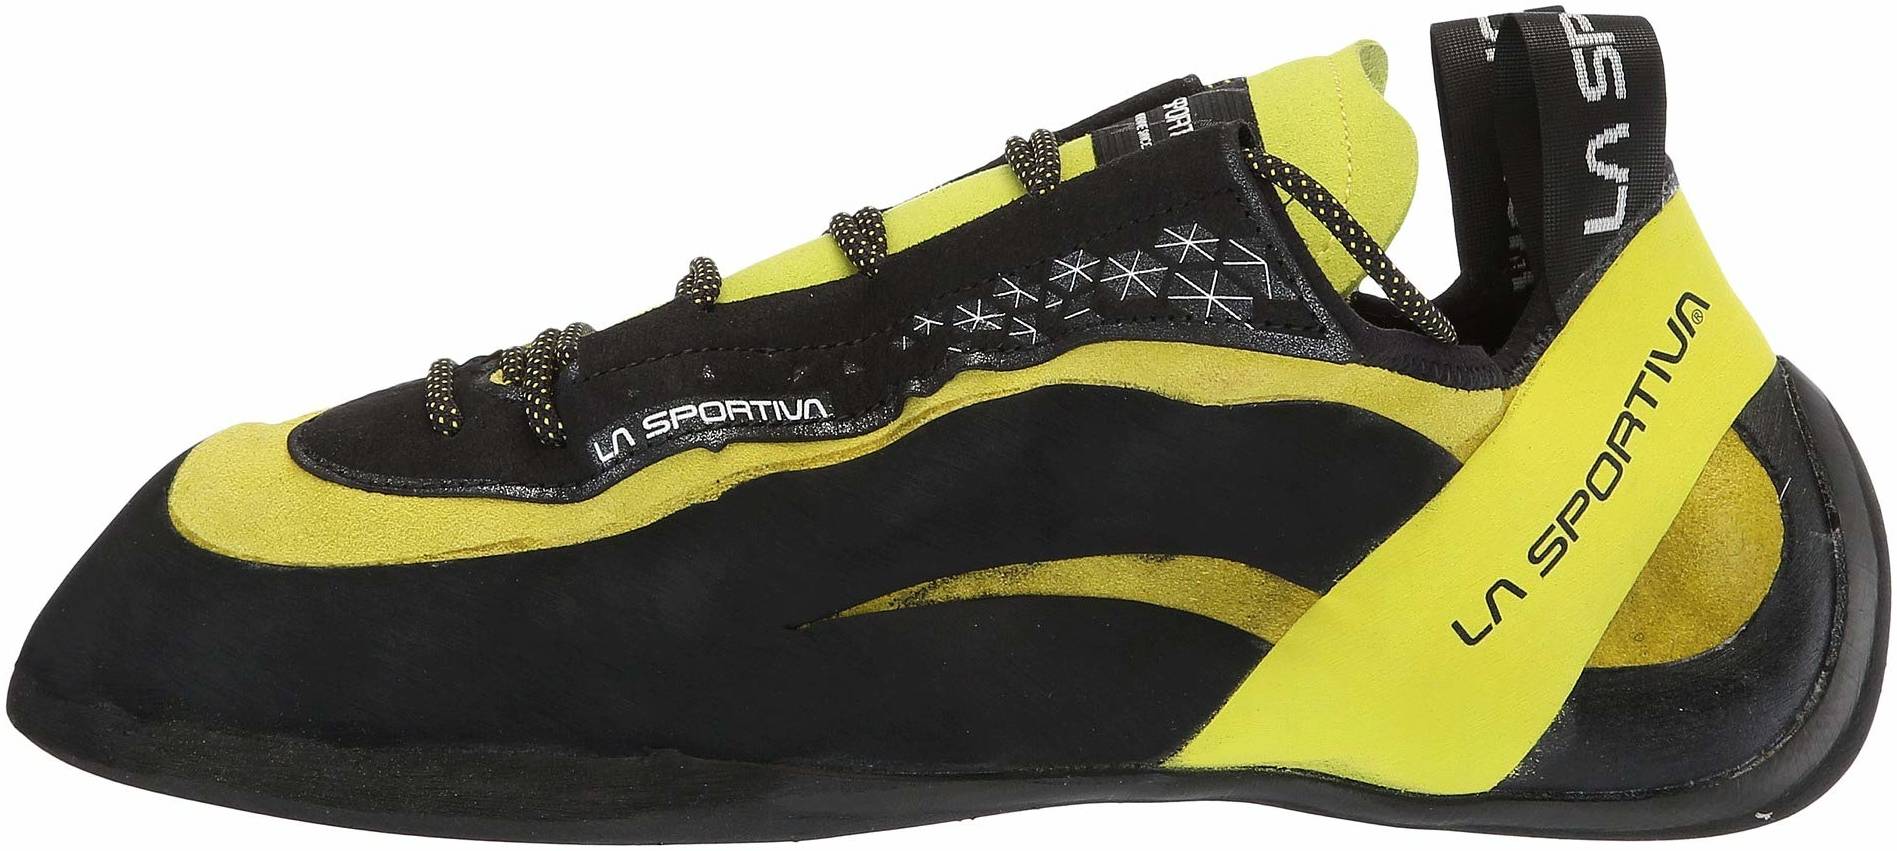 la sportiva climbing shoes 219